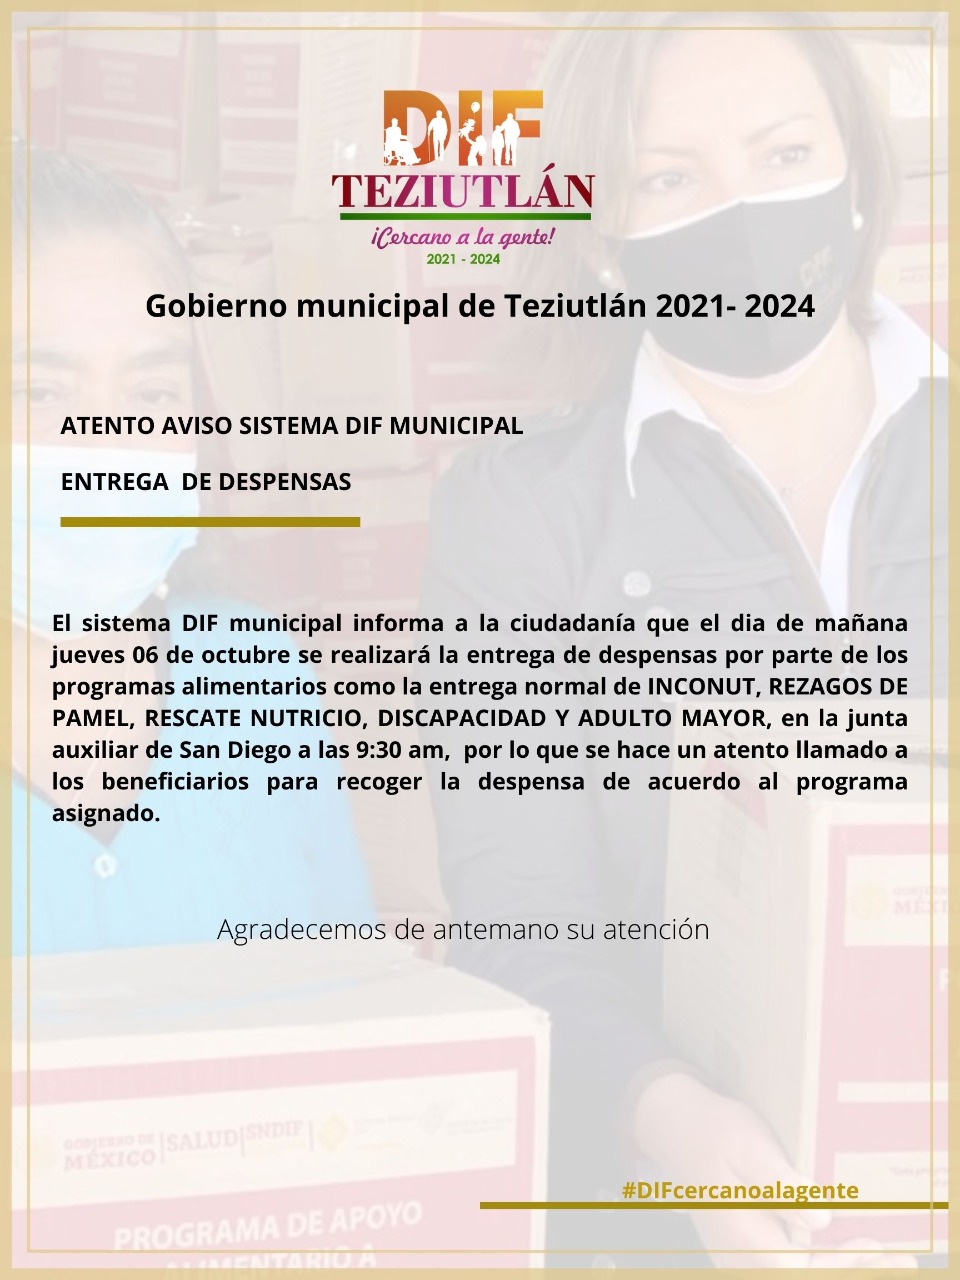 Desde Teziutlán: DIF municipal repartirá despensas este jueves